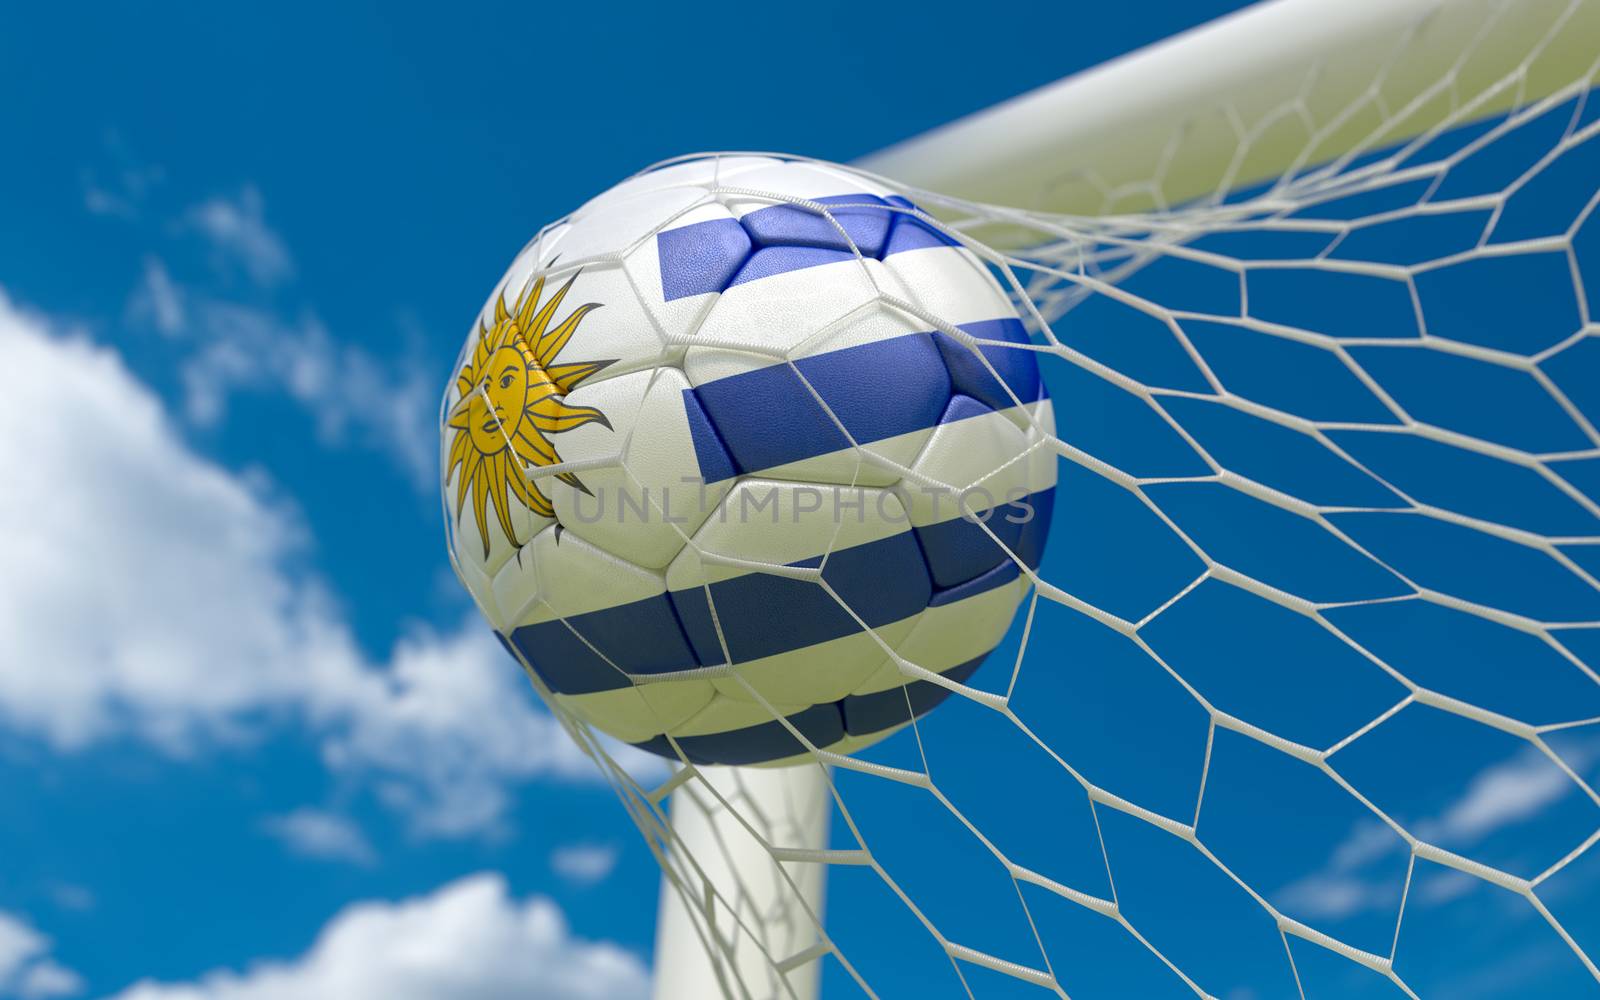 Uruguay flag and soccer ball, football in goal net